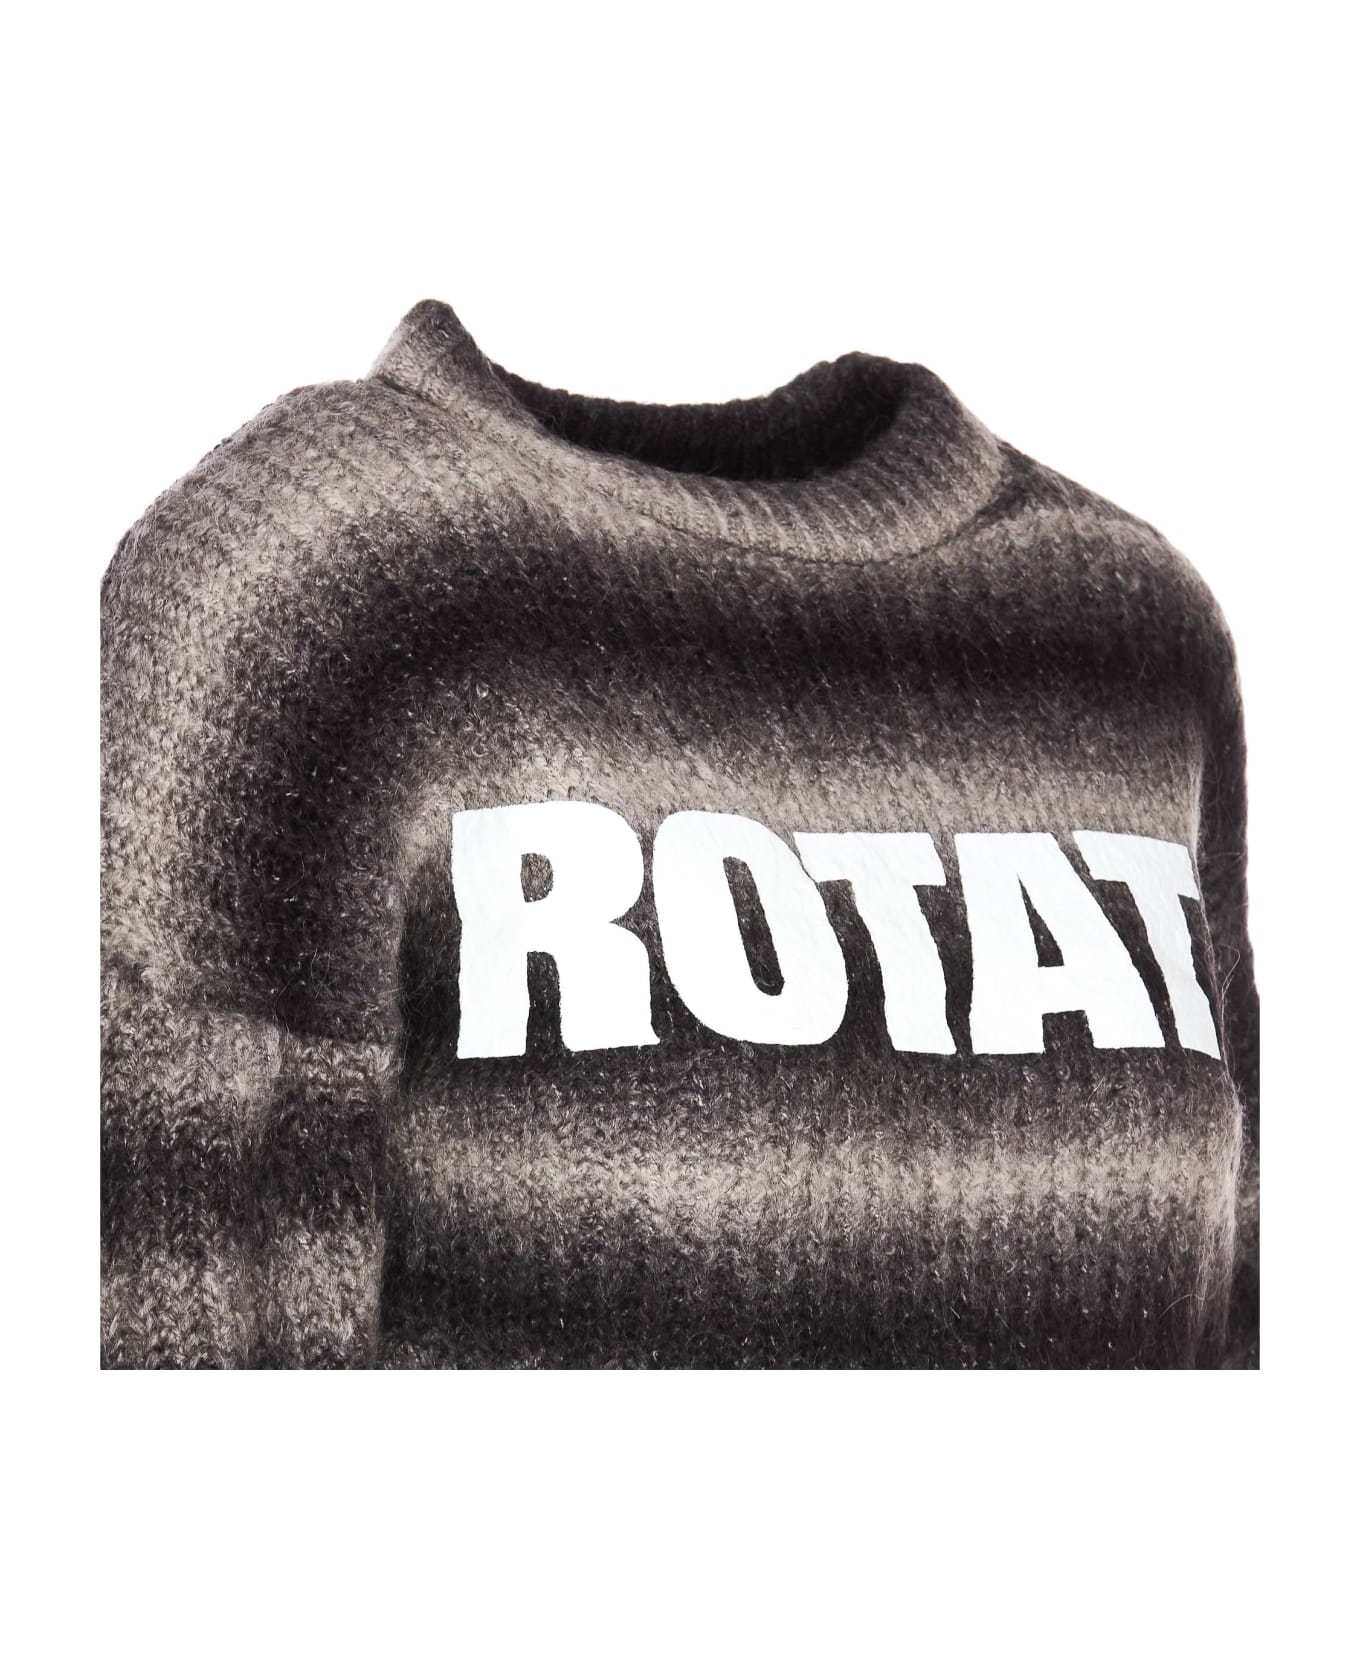 Rotate by Birger Christensen Logo Sweater - Grey